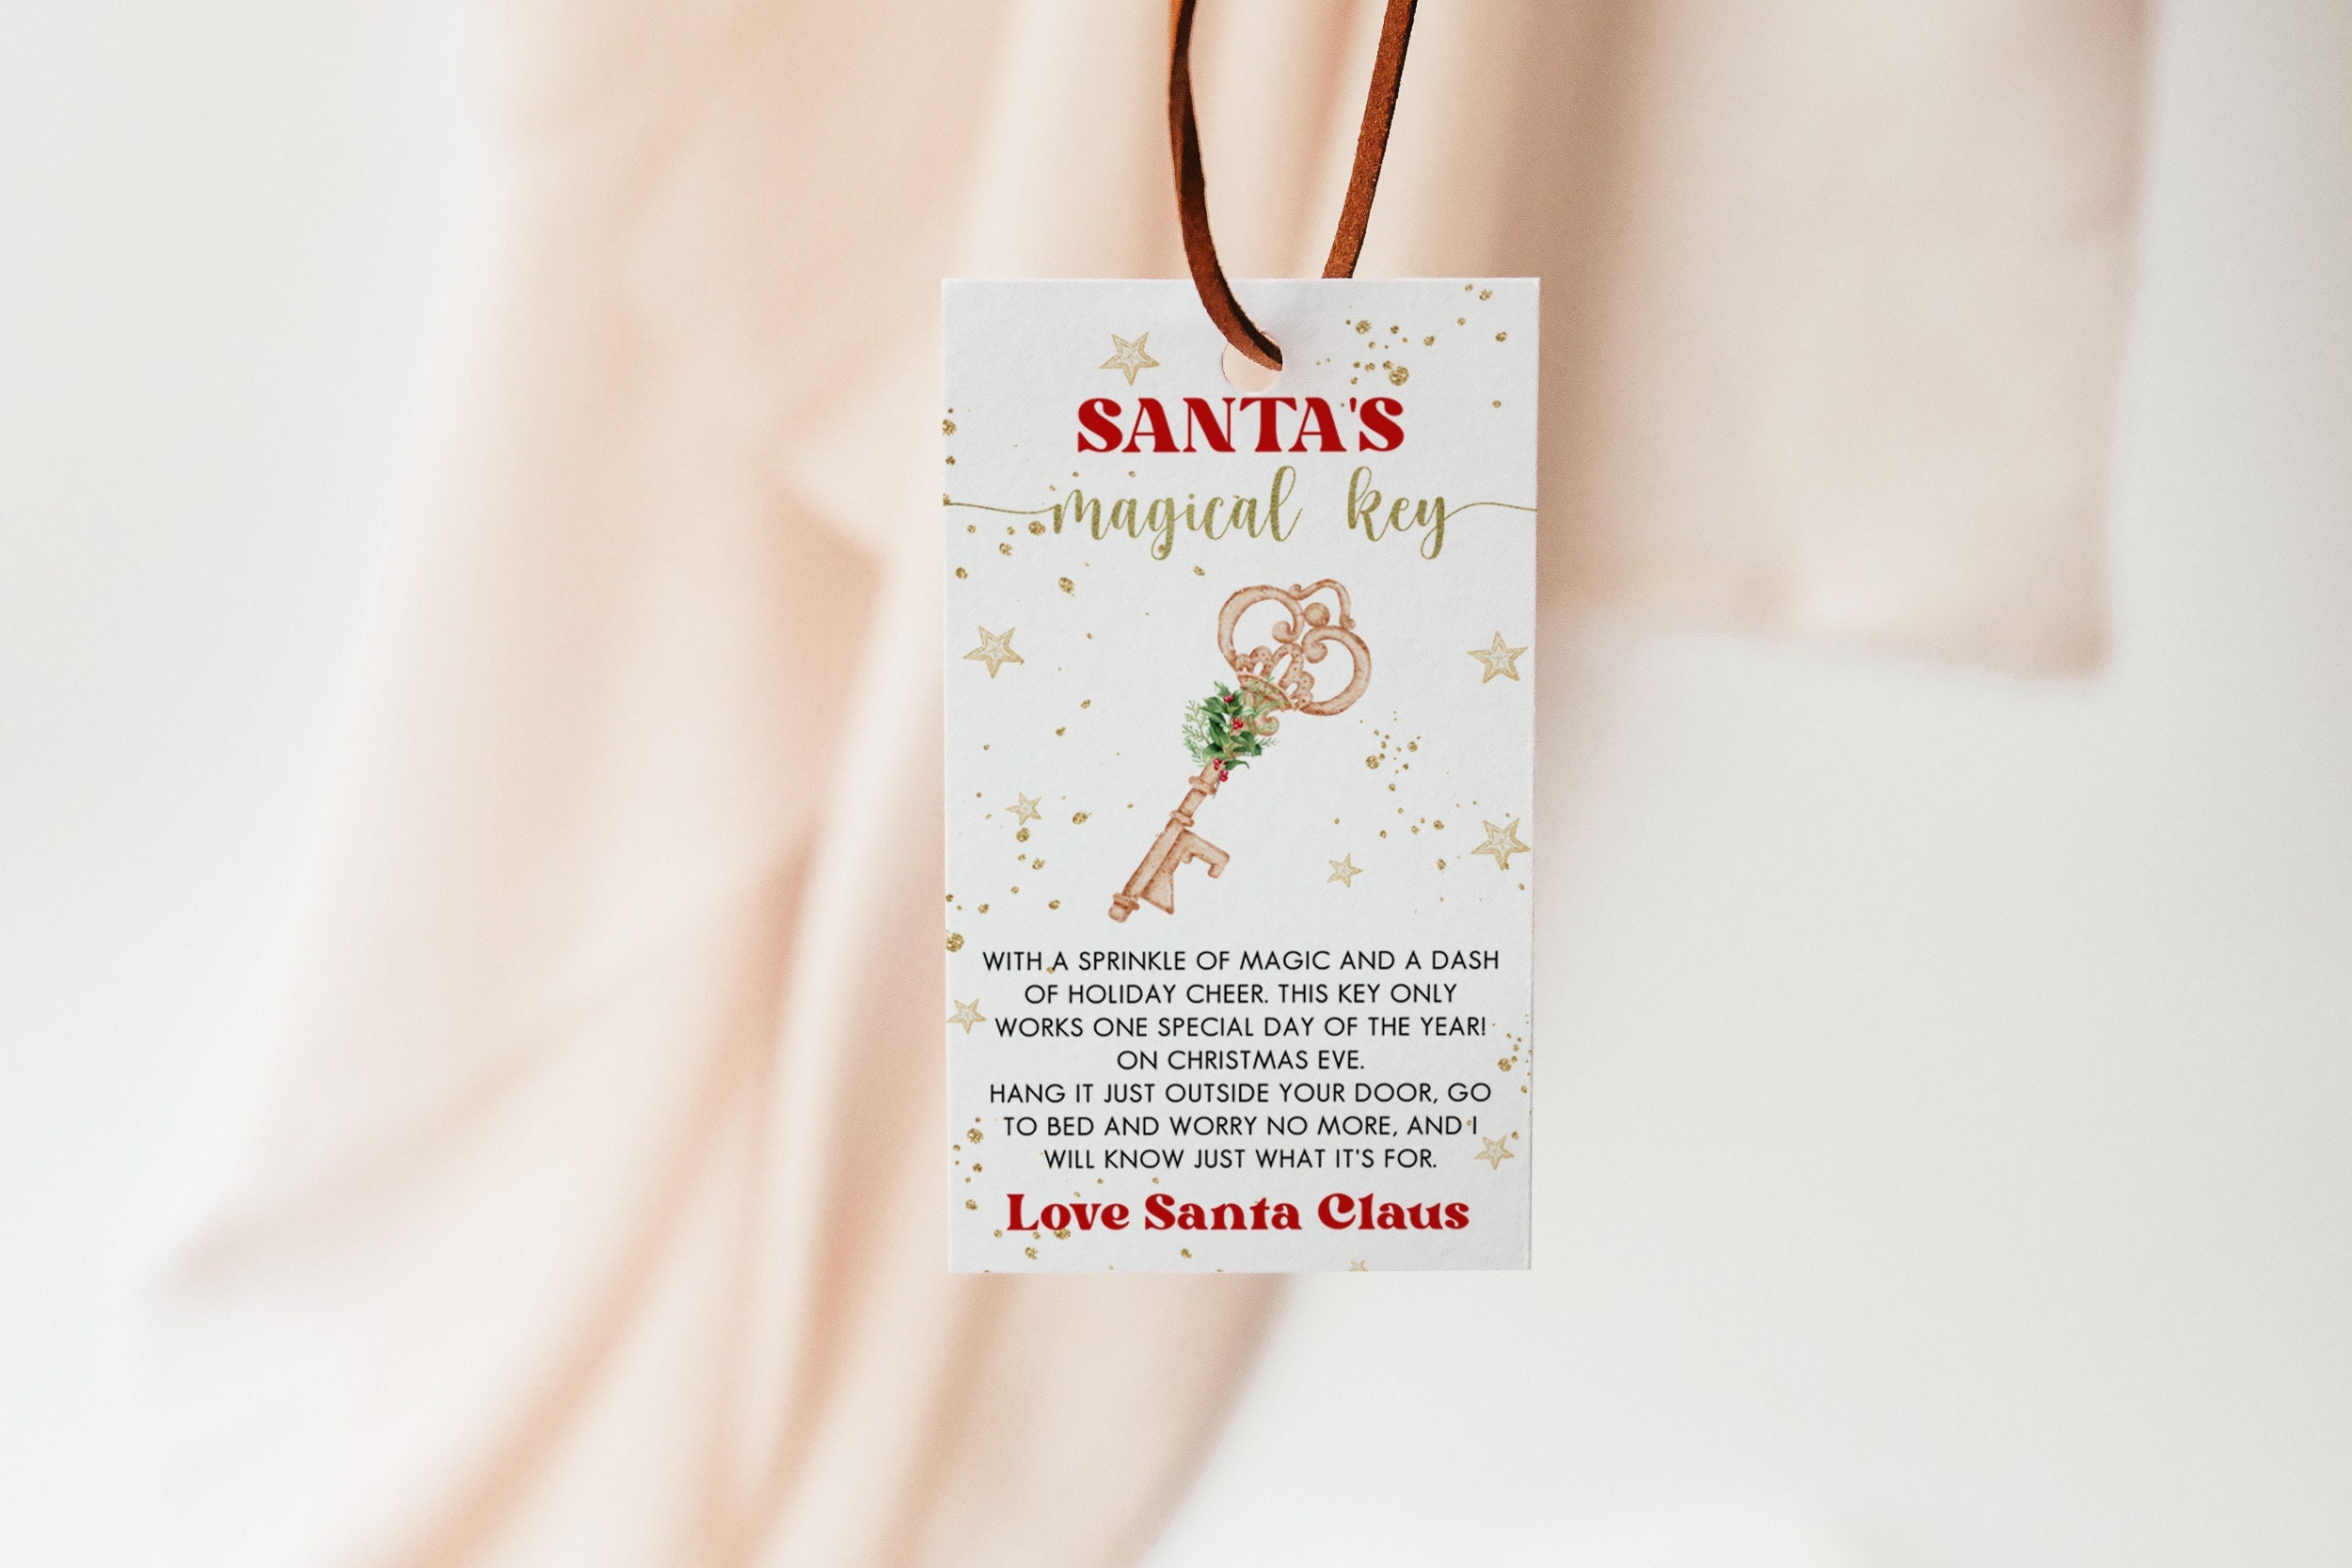 Santa's Key – Poems printables – The Idea Door